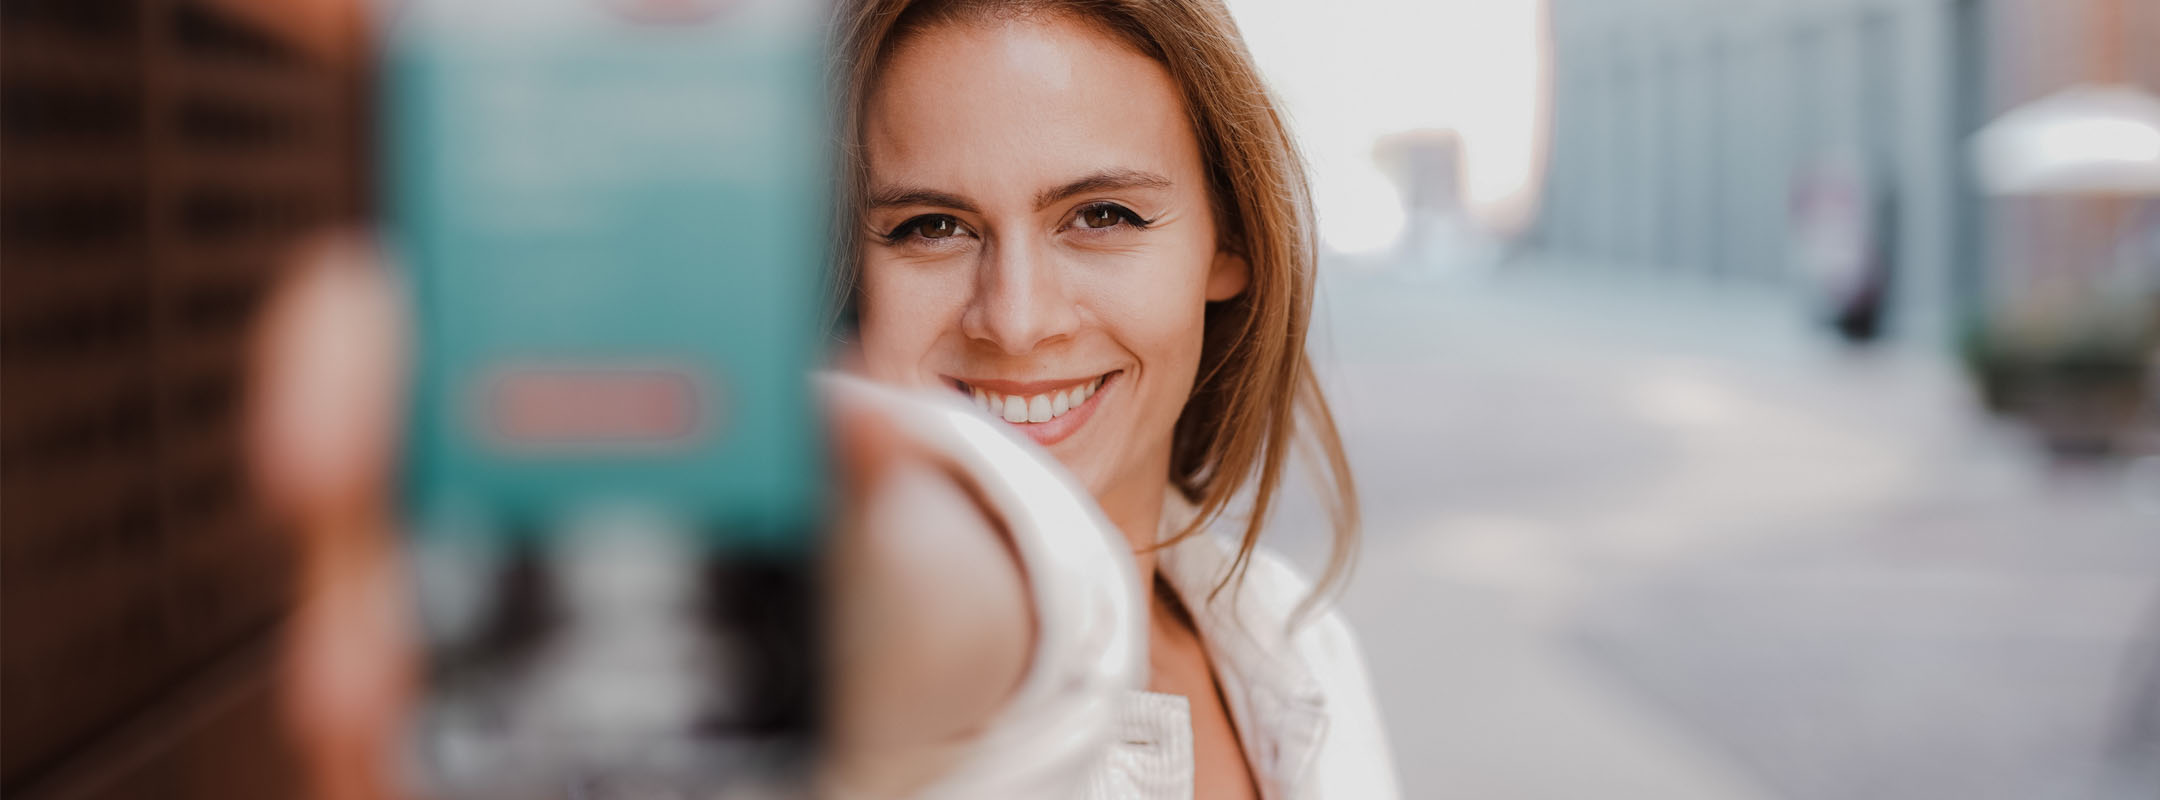 Ein junge Frau hält ihr Smartphone in die Kamera